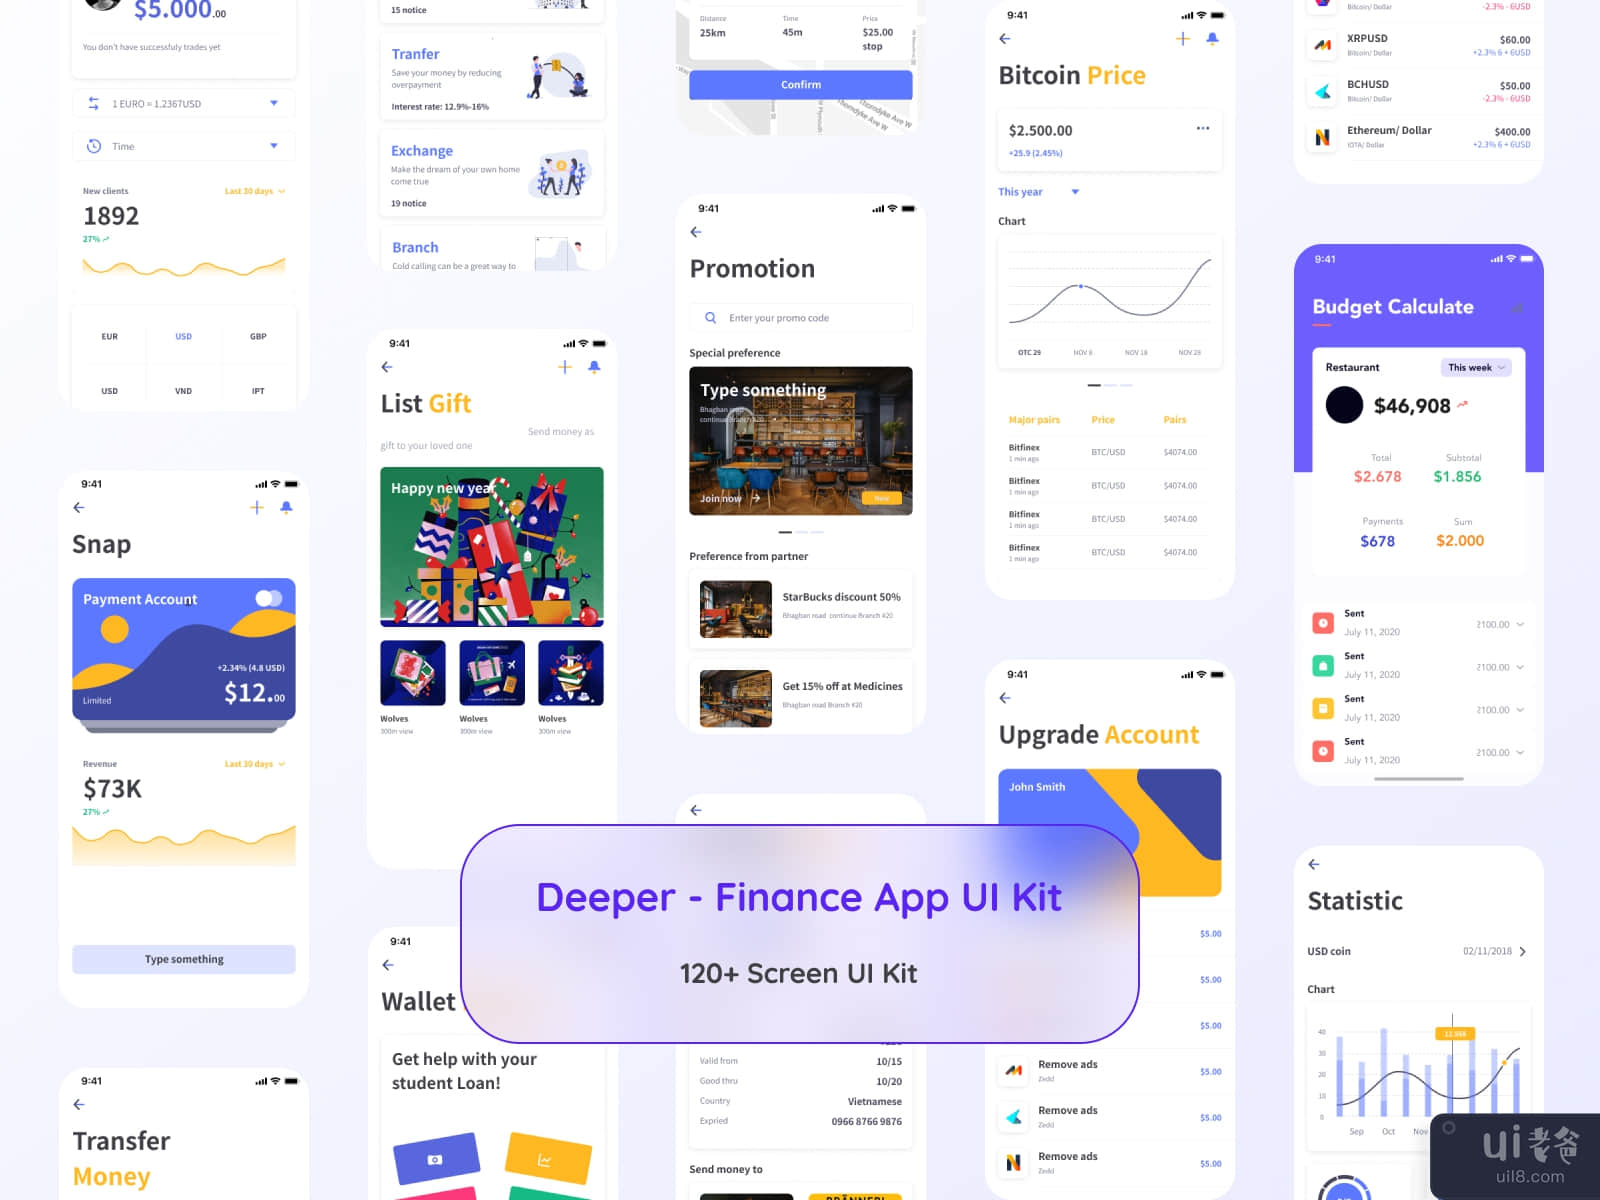 Deeper - Finance App UI Kit